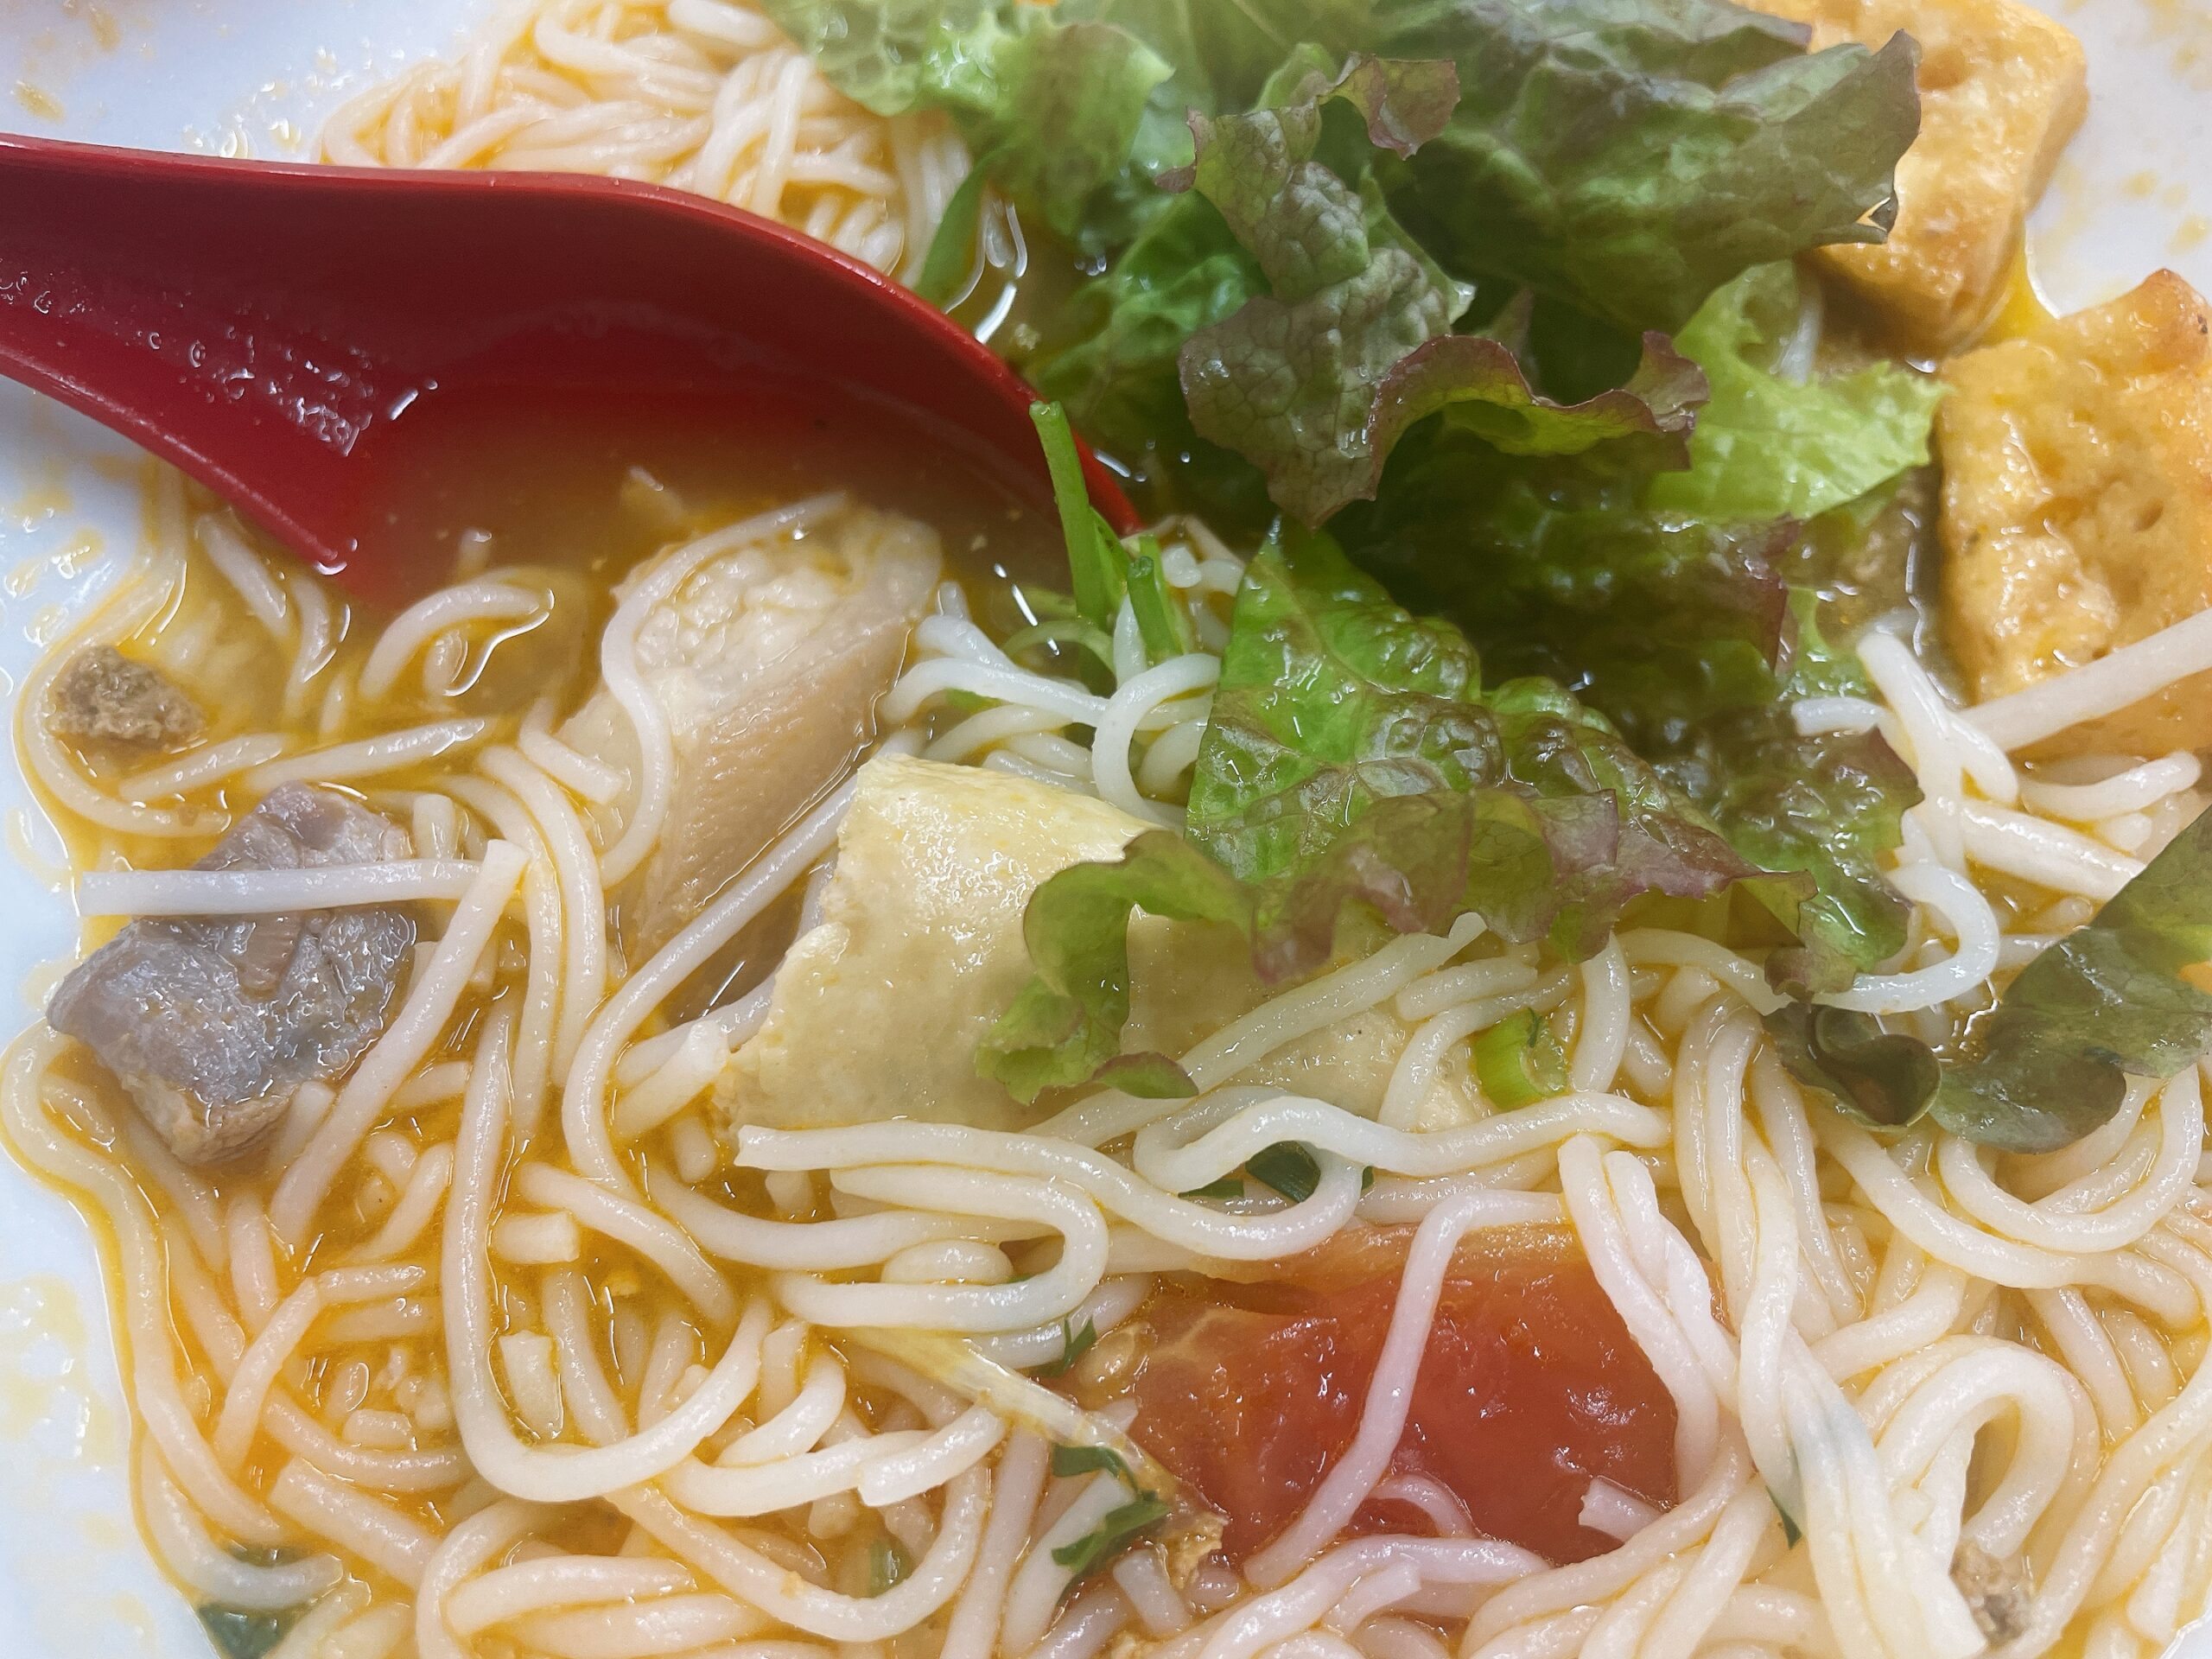 【愛知県安城市】隠れ家のようなベトナム食堂「77 food & Beer」